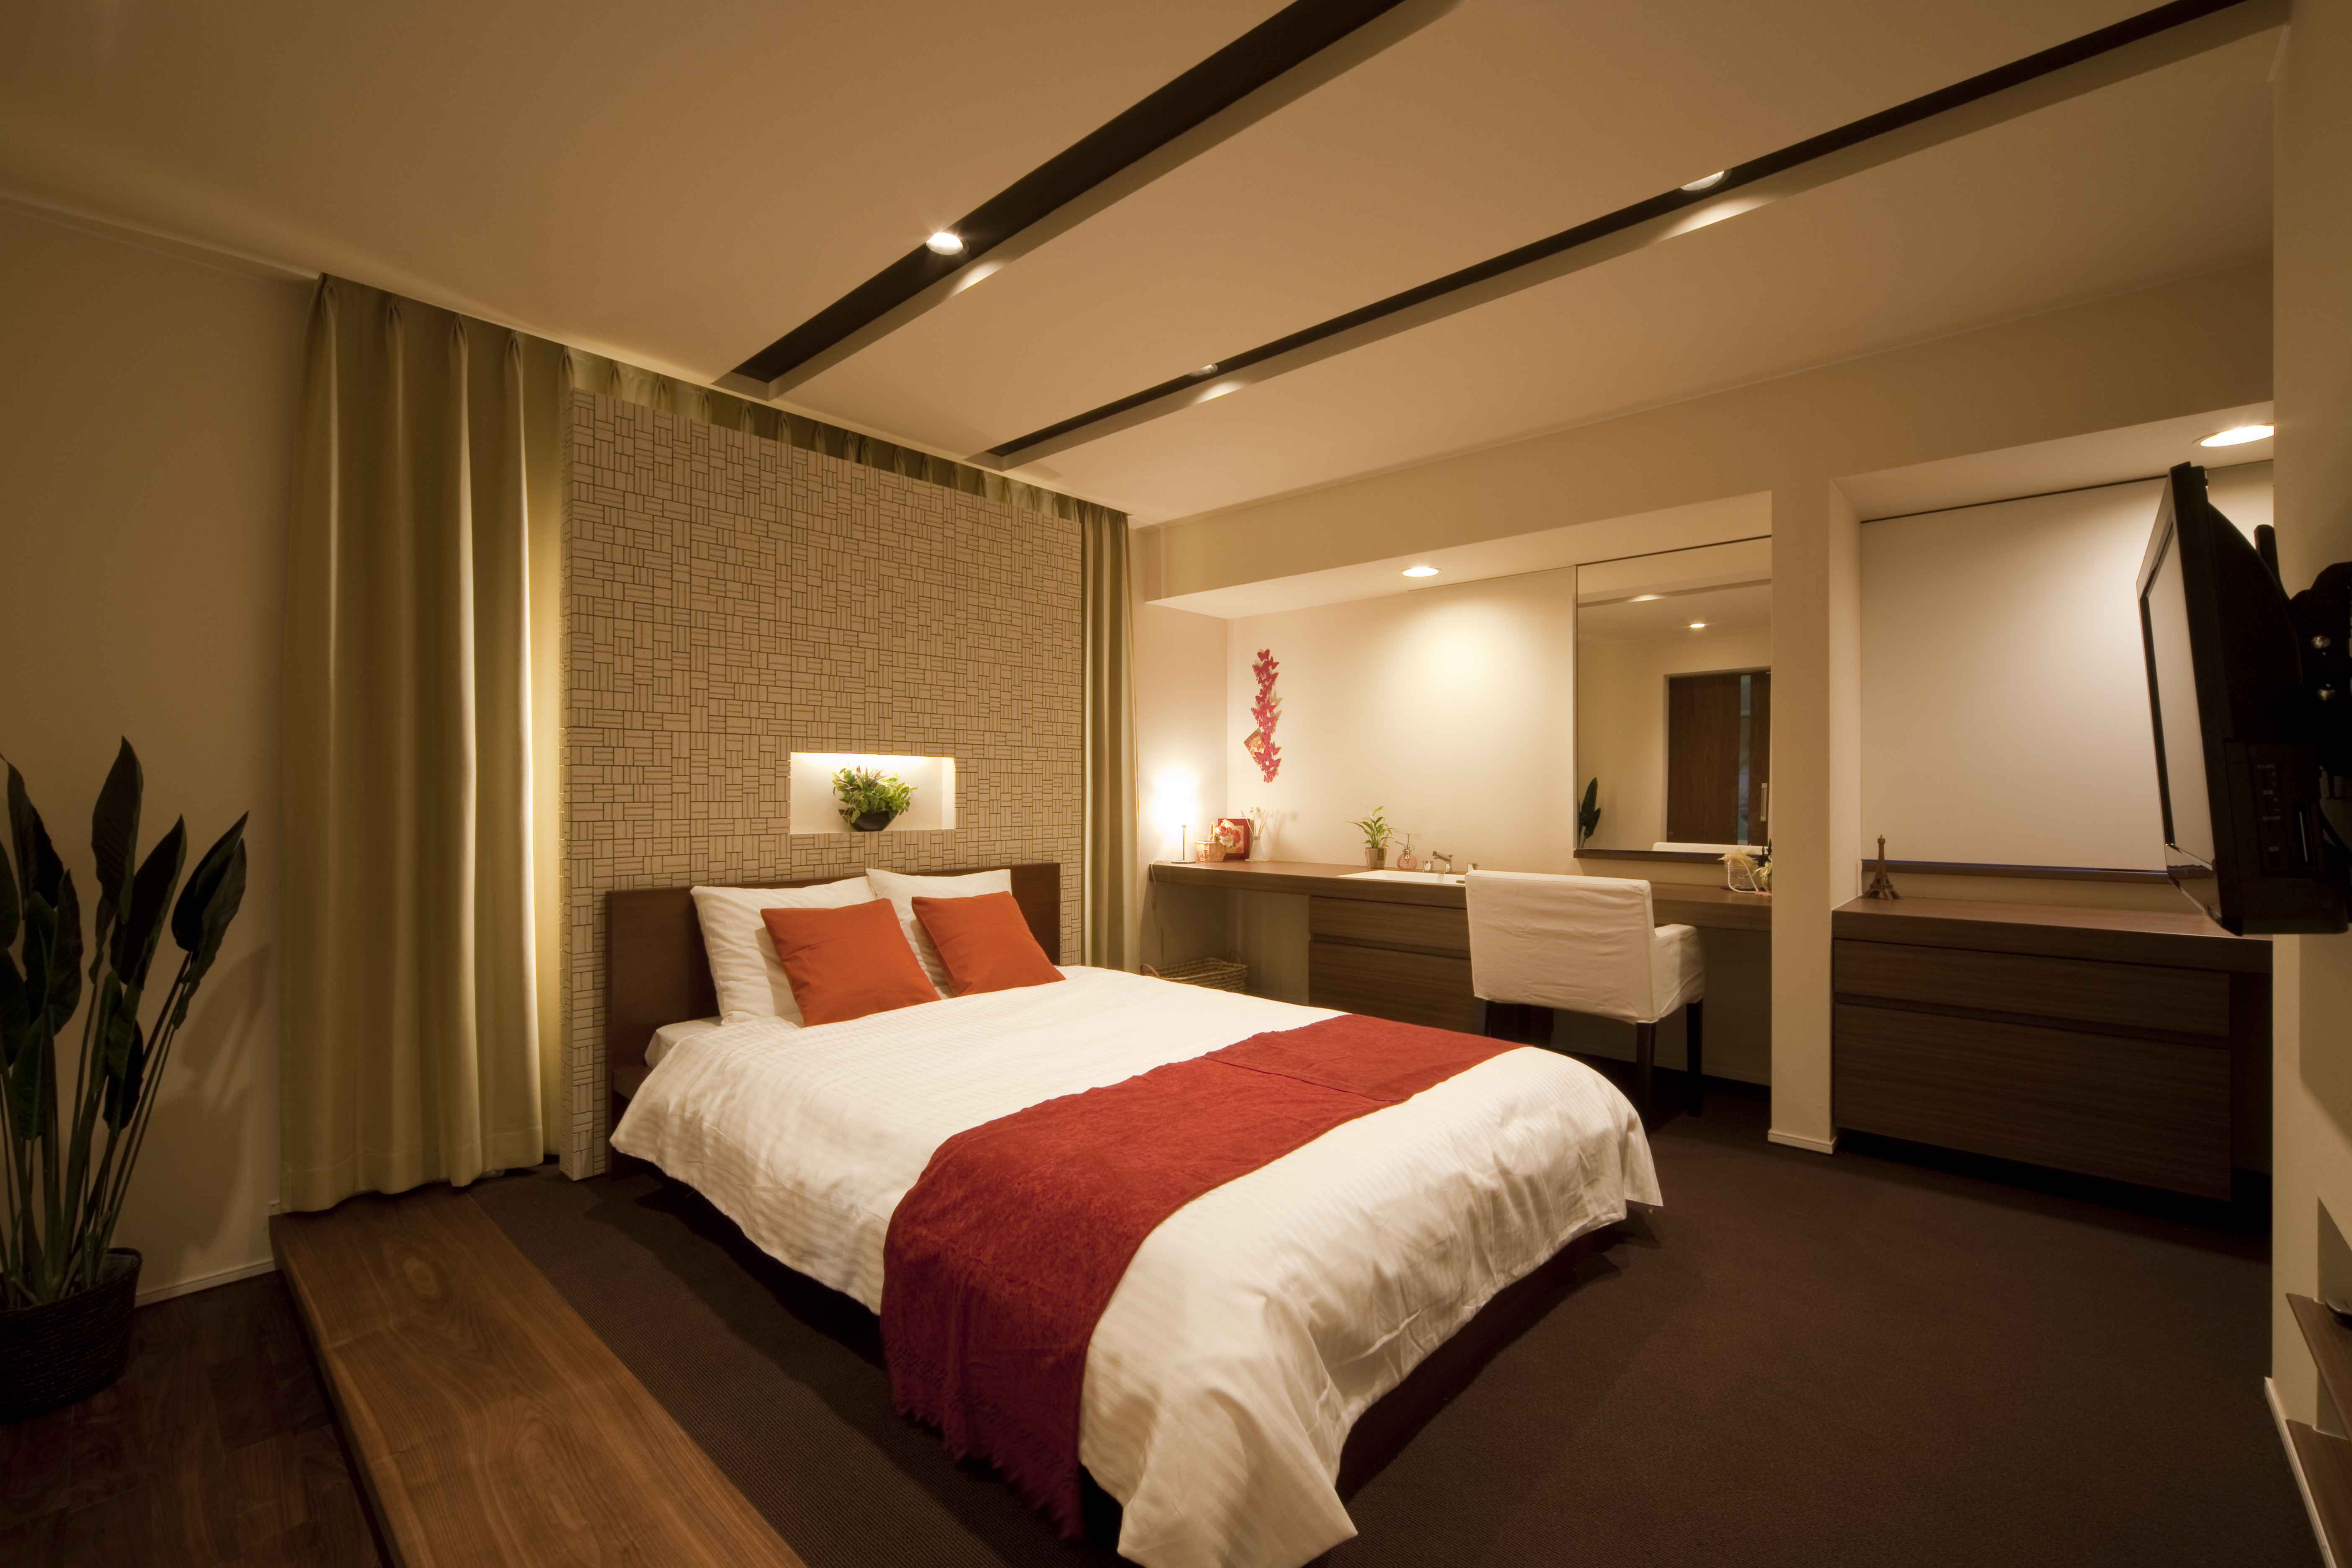 ヒノキのリラクゼーション効果でゆっくりと休める寝室、テーマはリゾートホテルです。